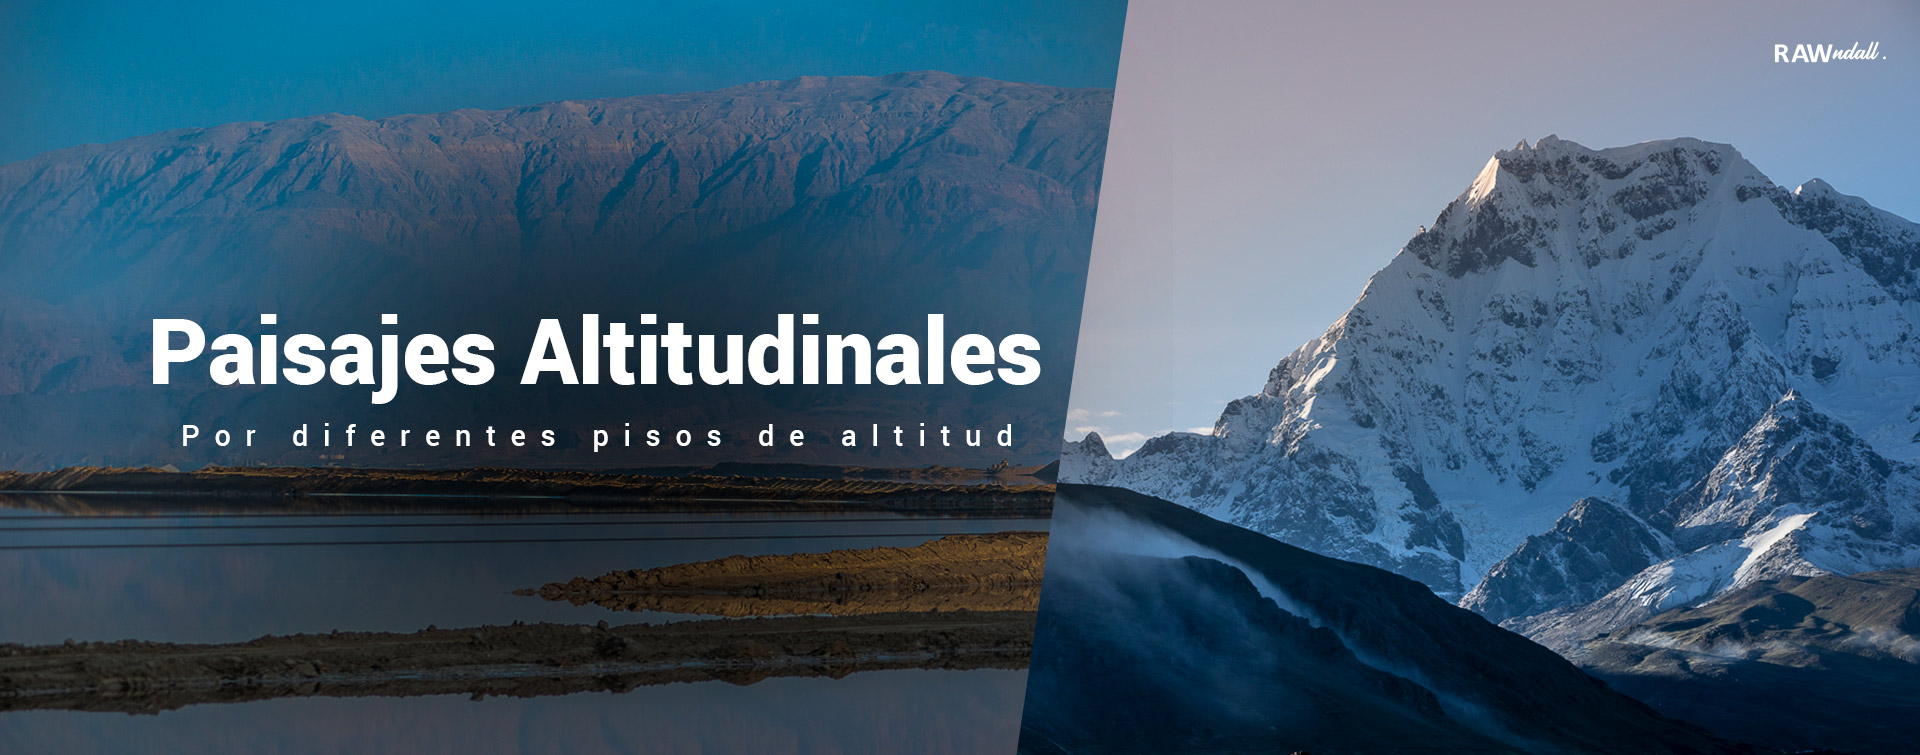 Cover de Paisajes por altitud, una fotocomposición de dos fotografias, una del mar muerto en Israel y la otra del Ausangate en Peru.